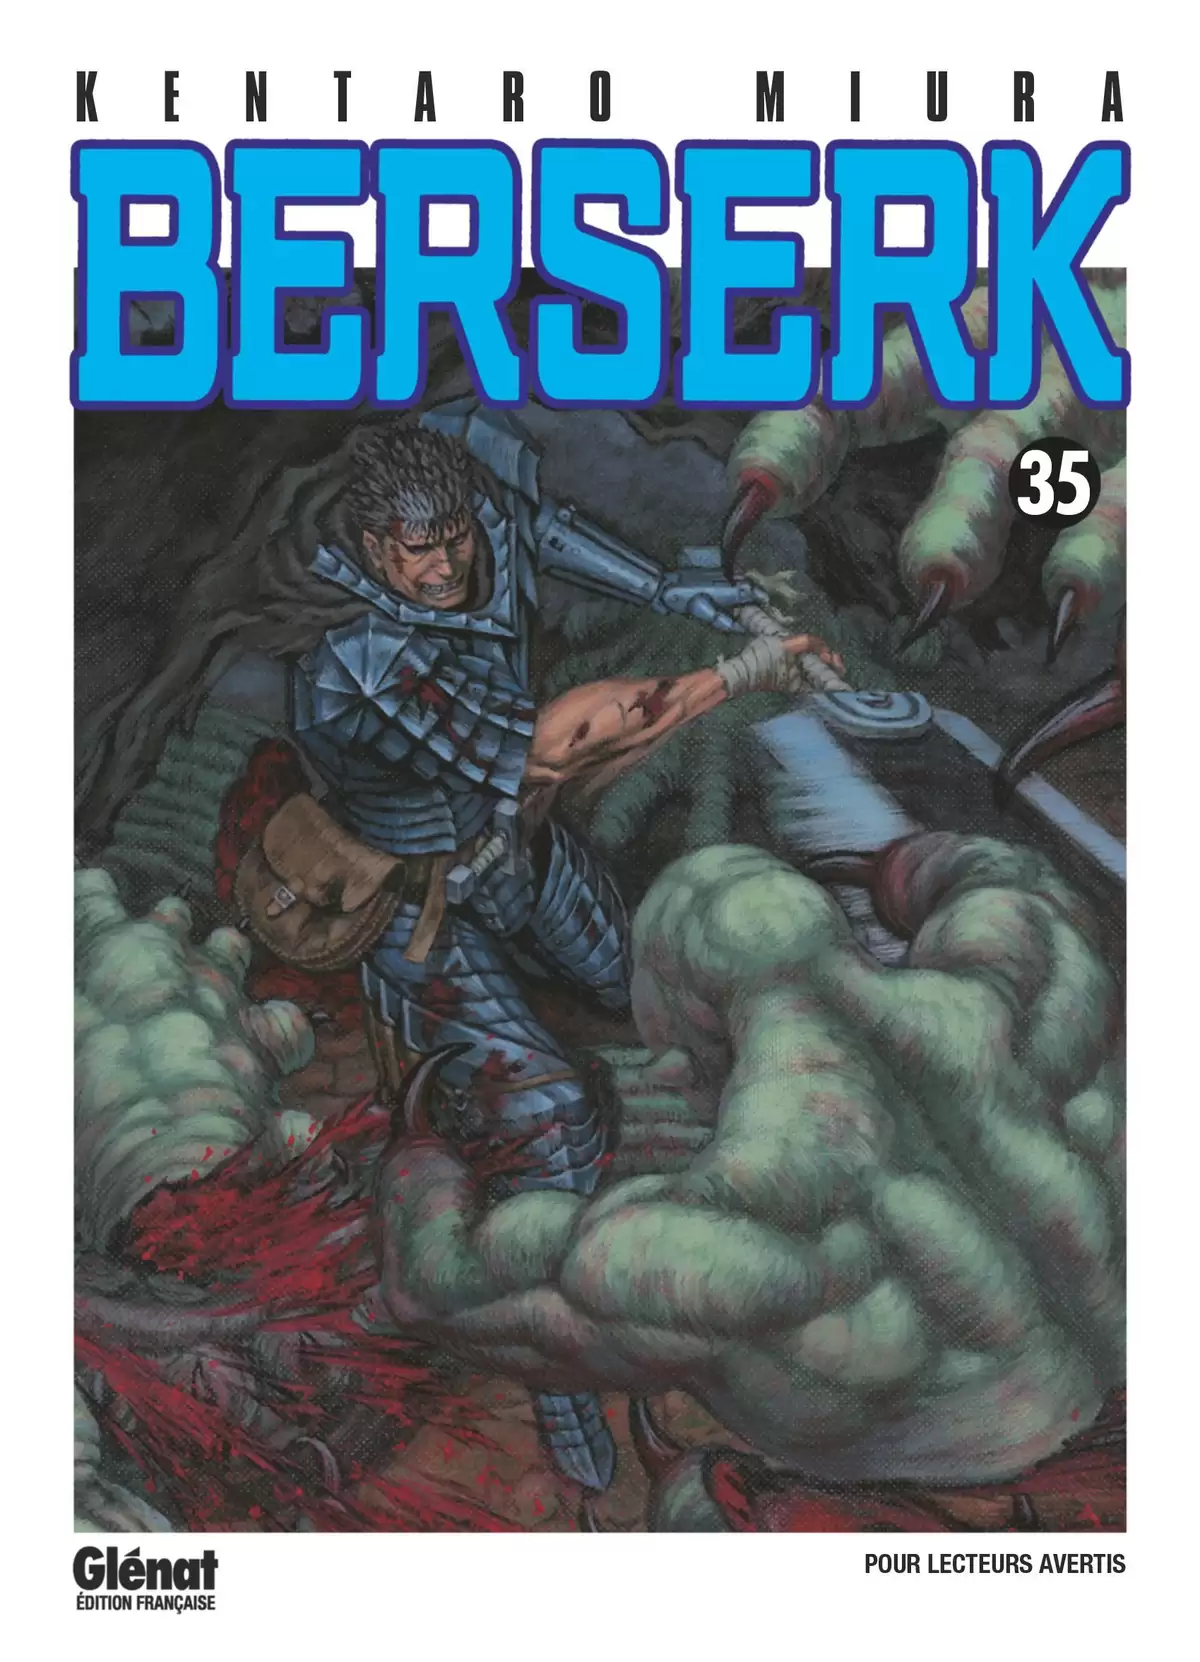 Berserk Volume 35 page 1